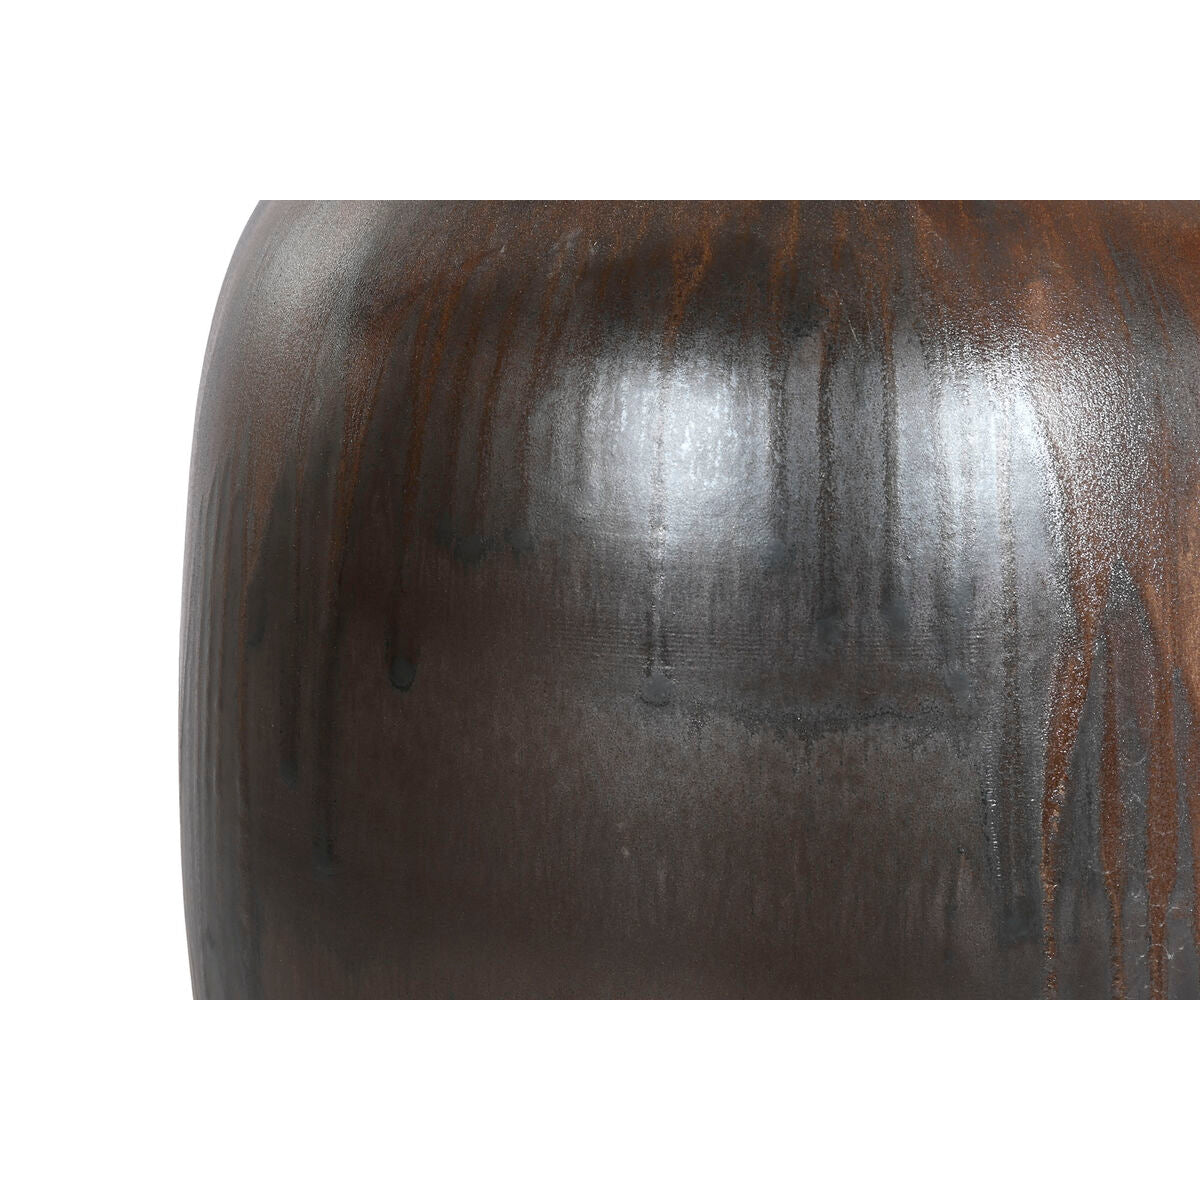 Vase Home ESPRIT Dark brown Ceramic 38 x 38 x 60 cm